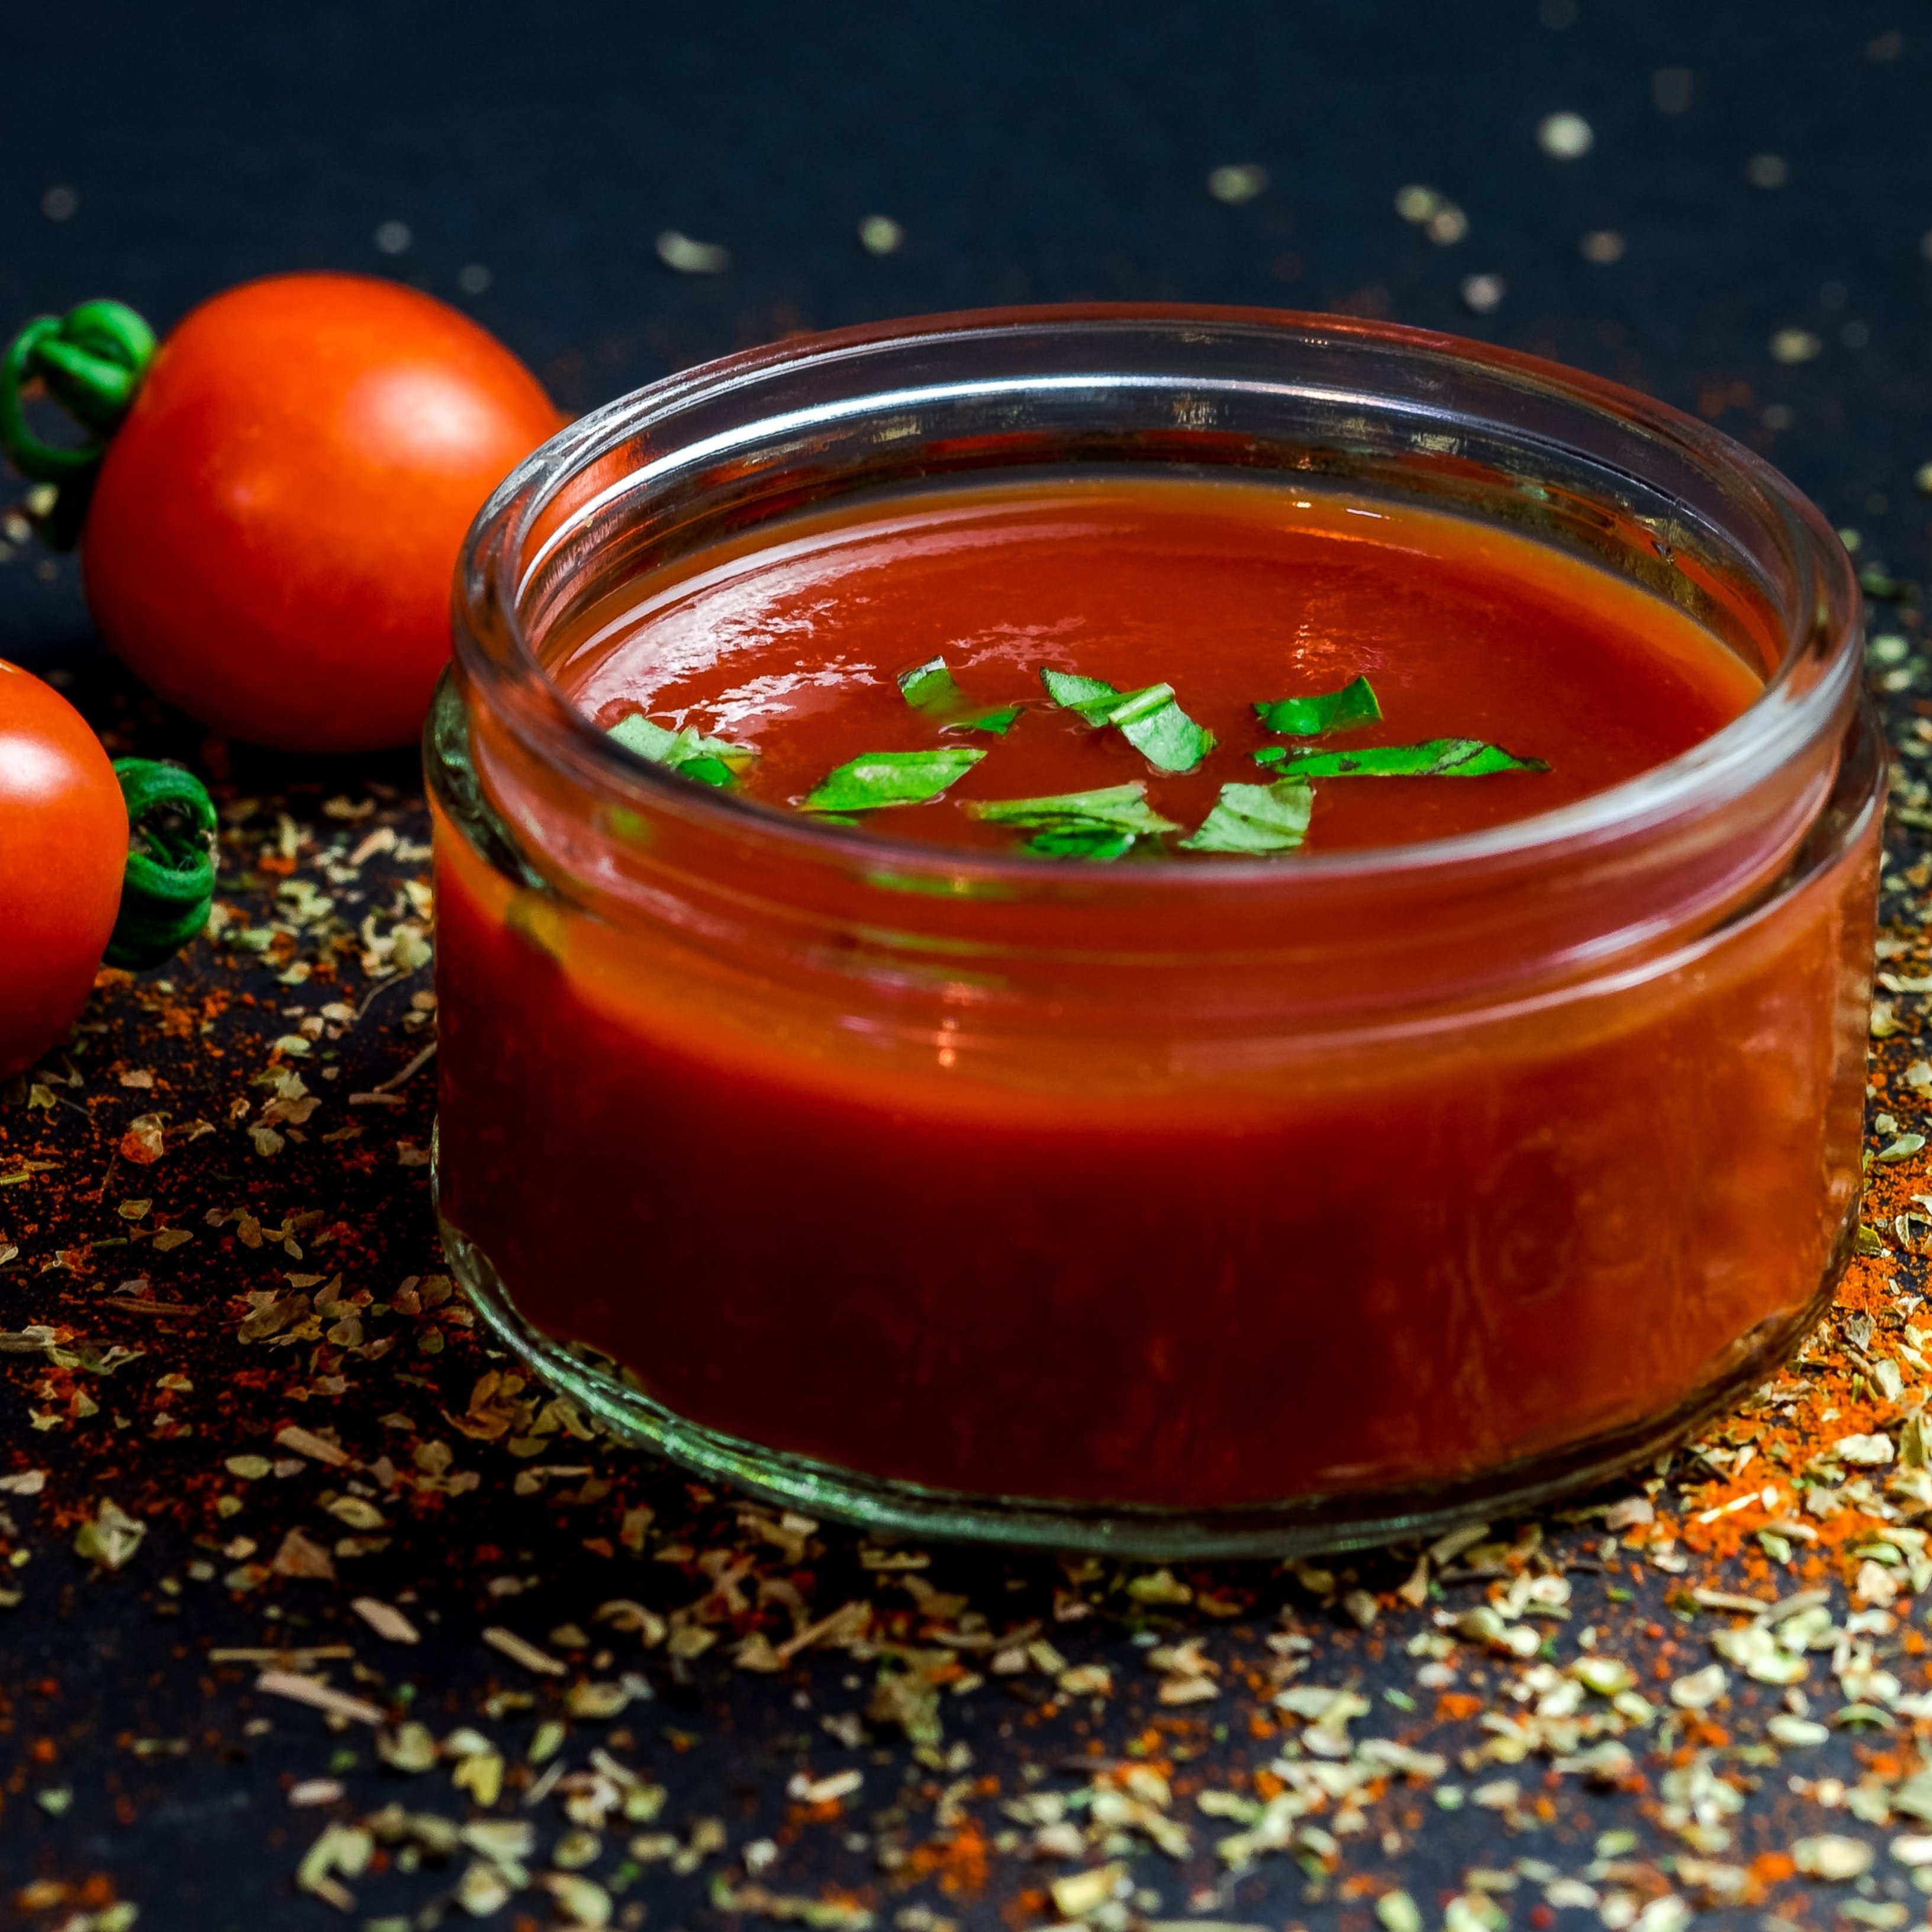 El puré de tomate podría ayudar a mejorar la fertilidad masculina